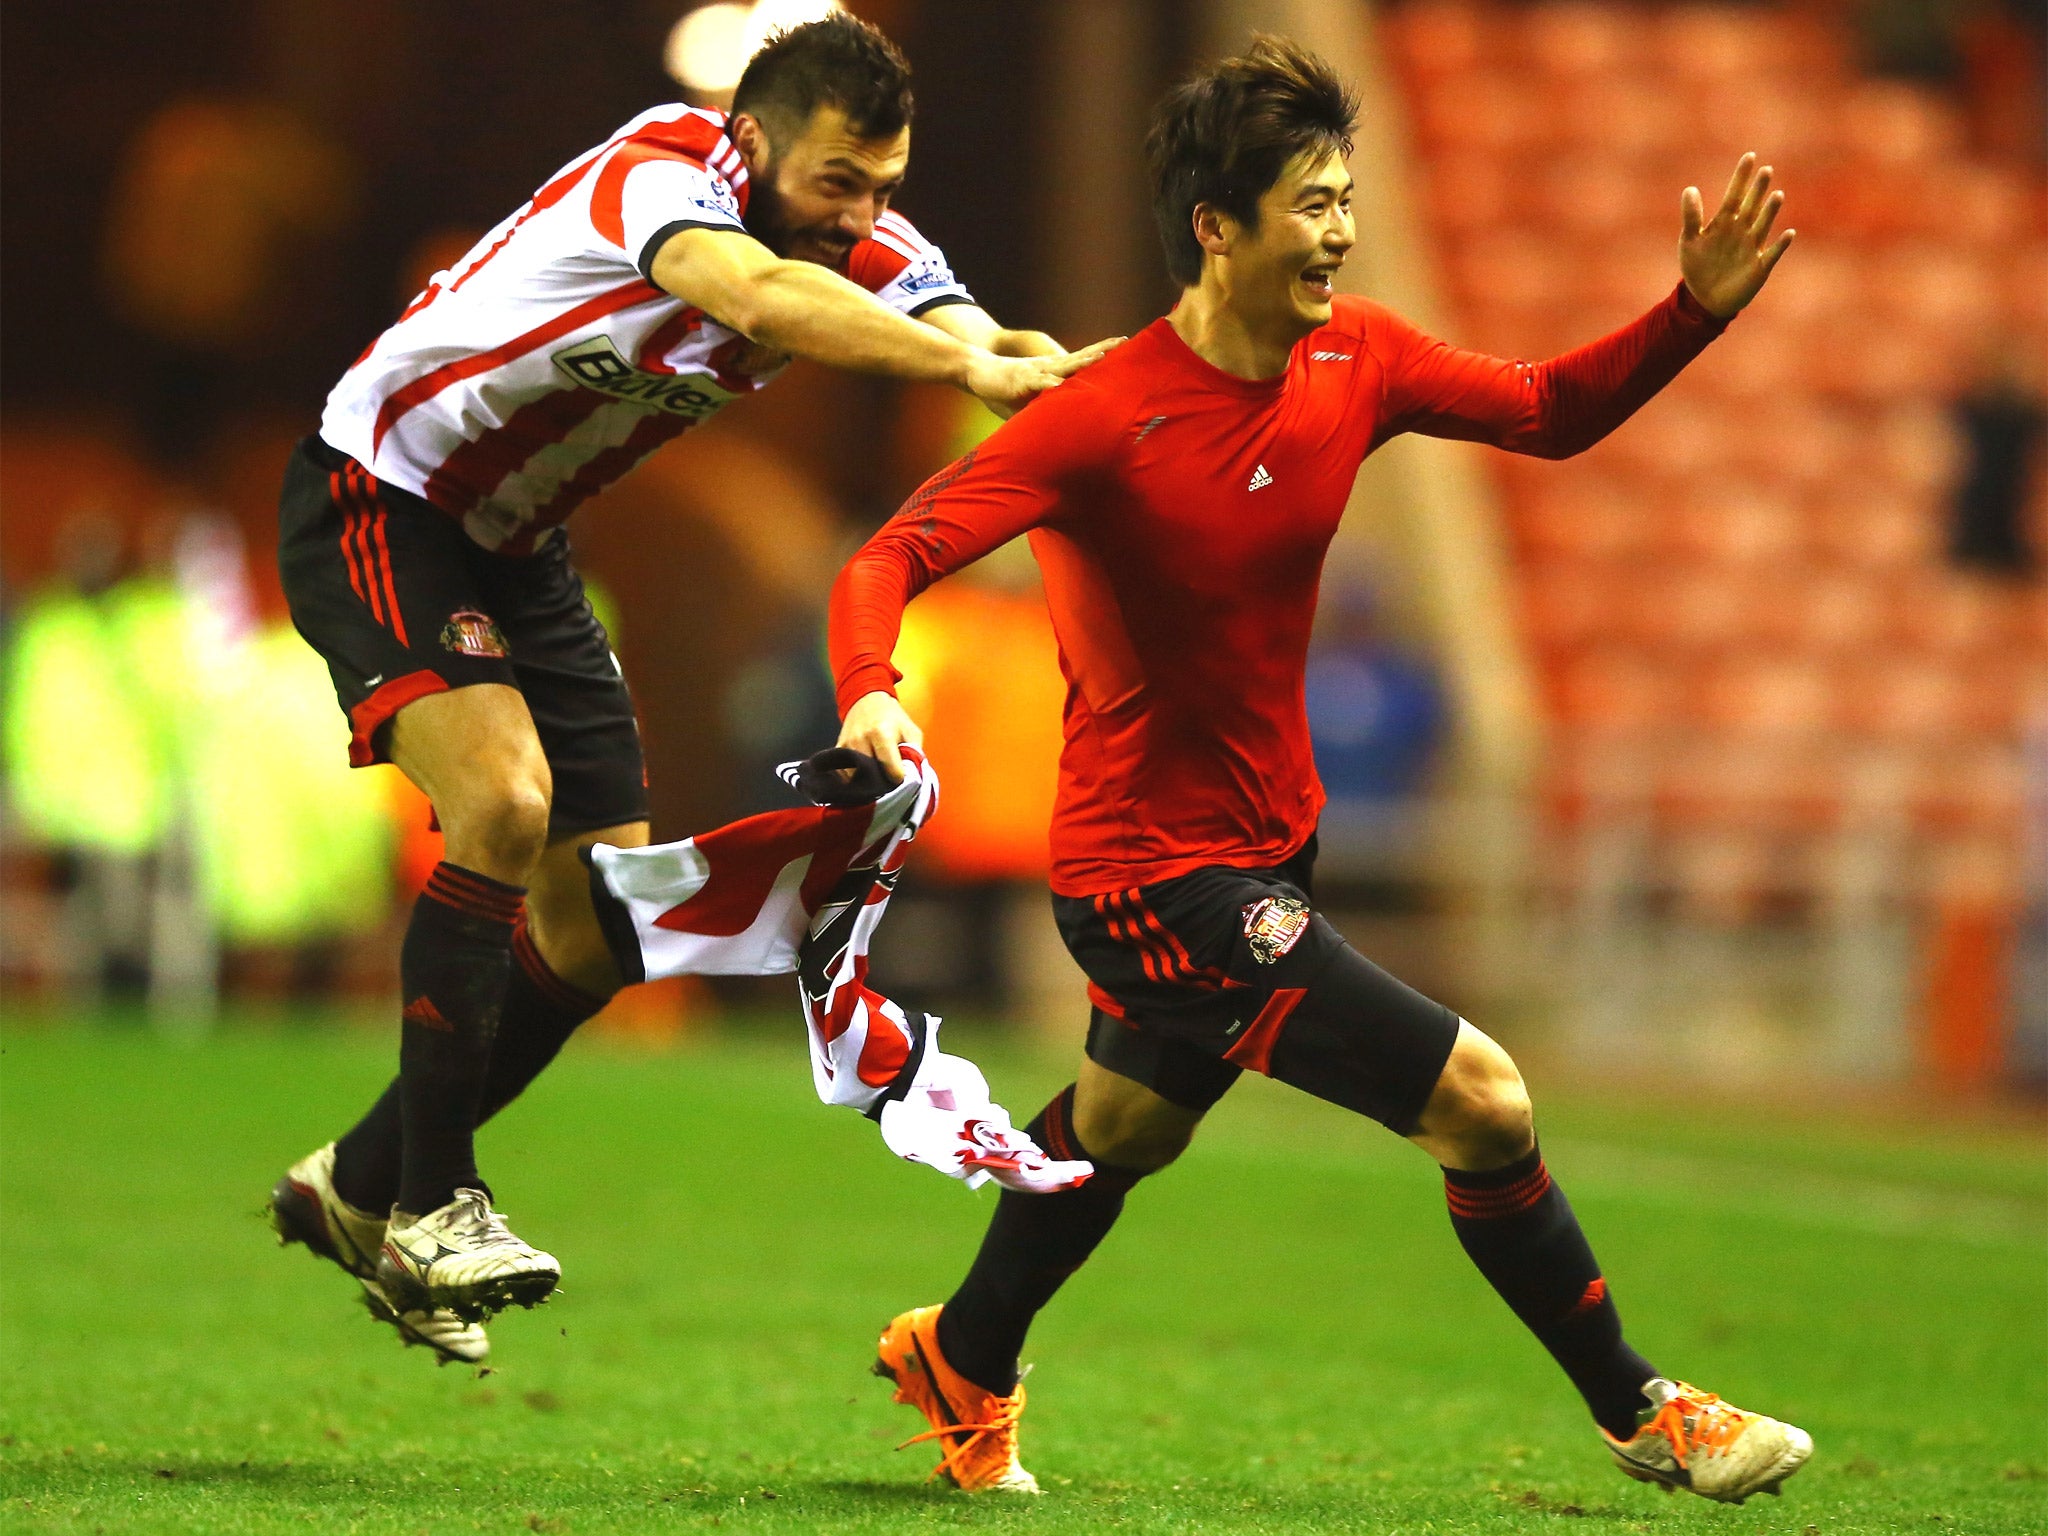 Ki Sung-Yong of Sunderland celebrates scoring the winning goal